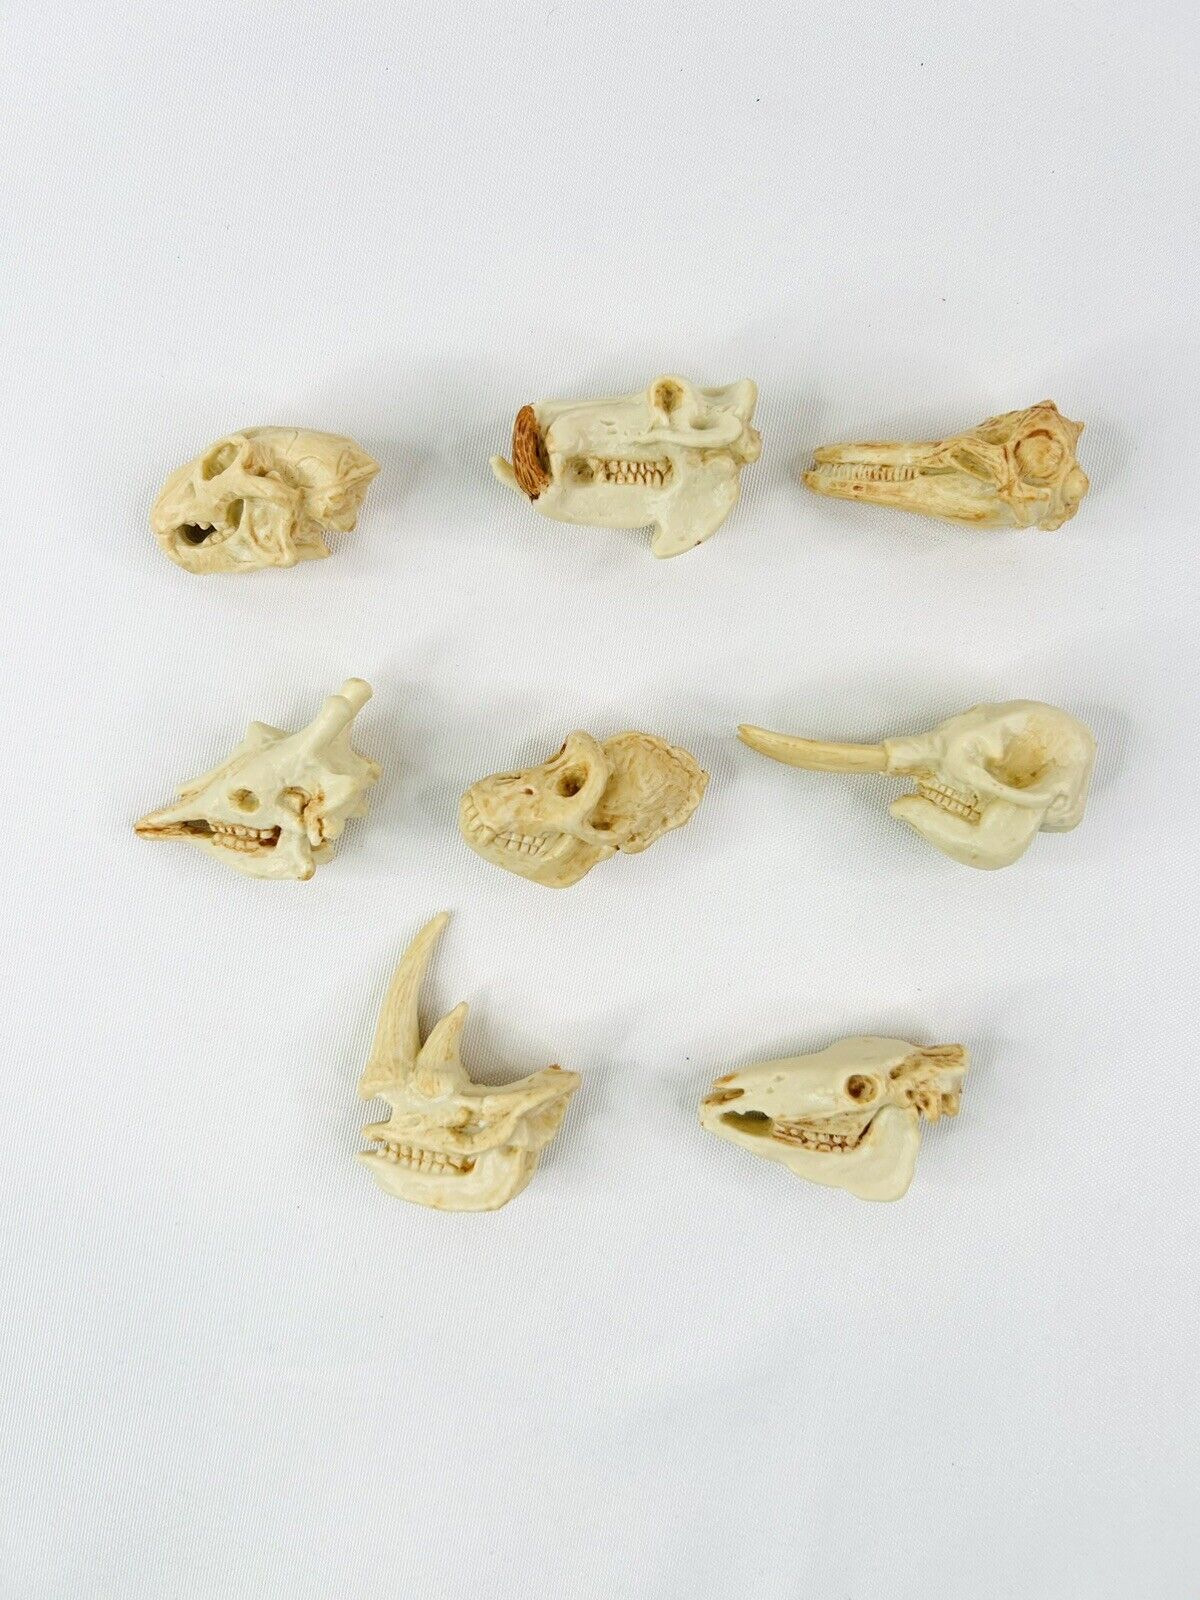 Safari Ltd Dinosaur Skulls Fossils Bones Prehistoric Vinyl Figures Lot Of 8